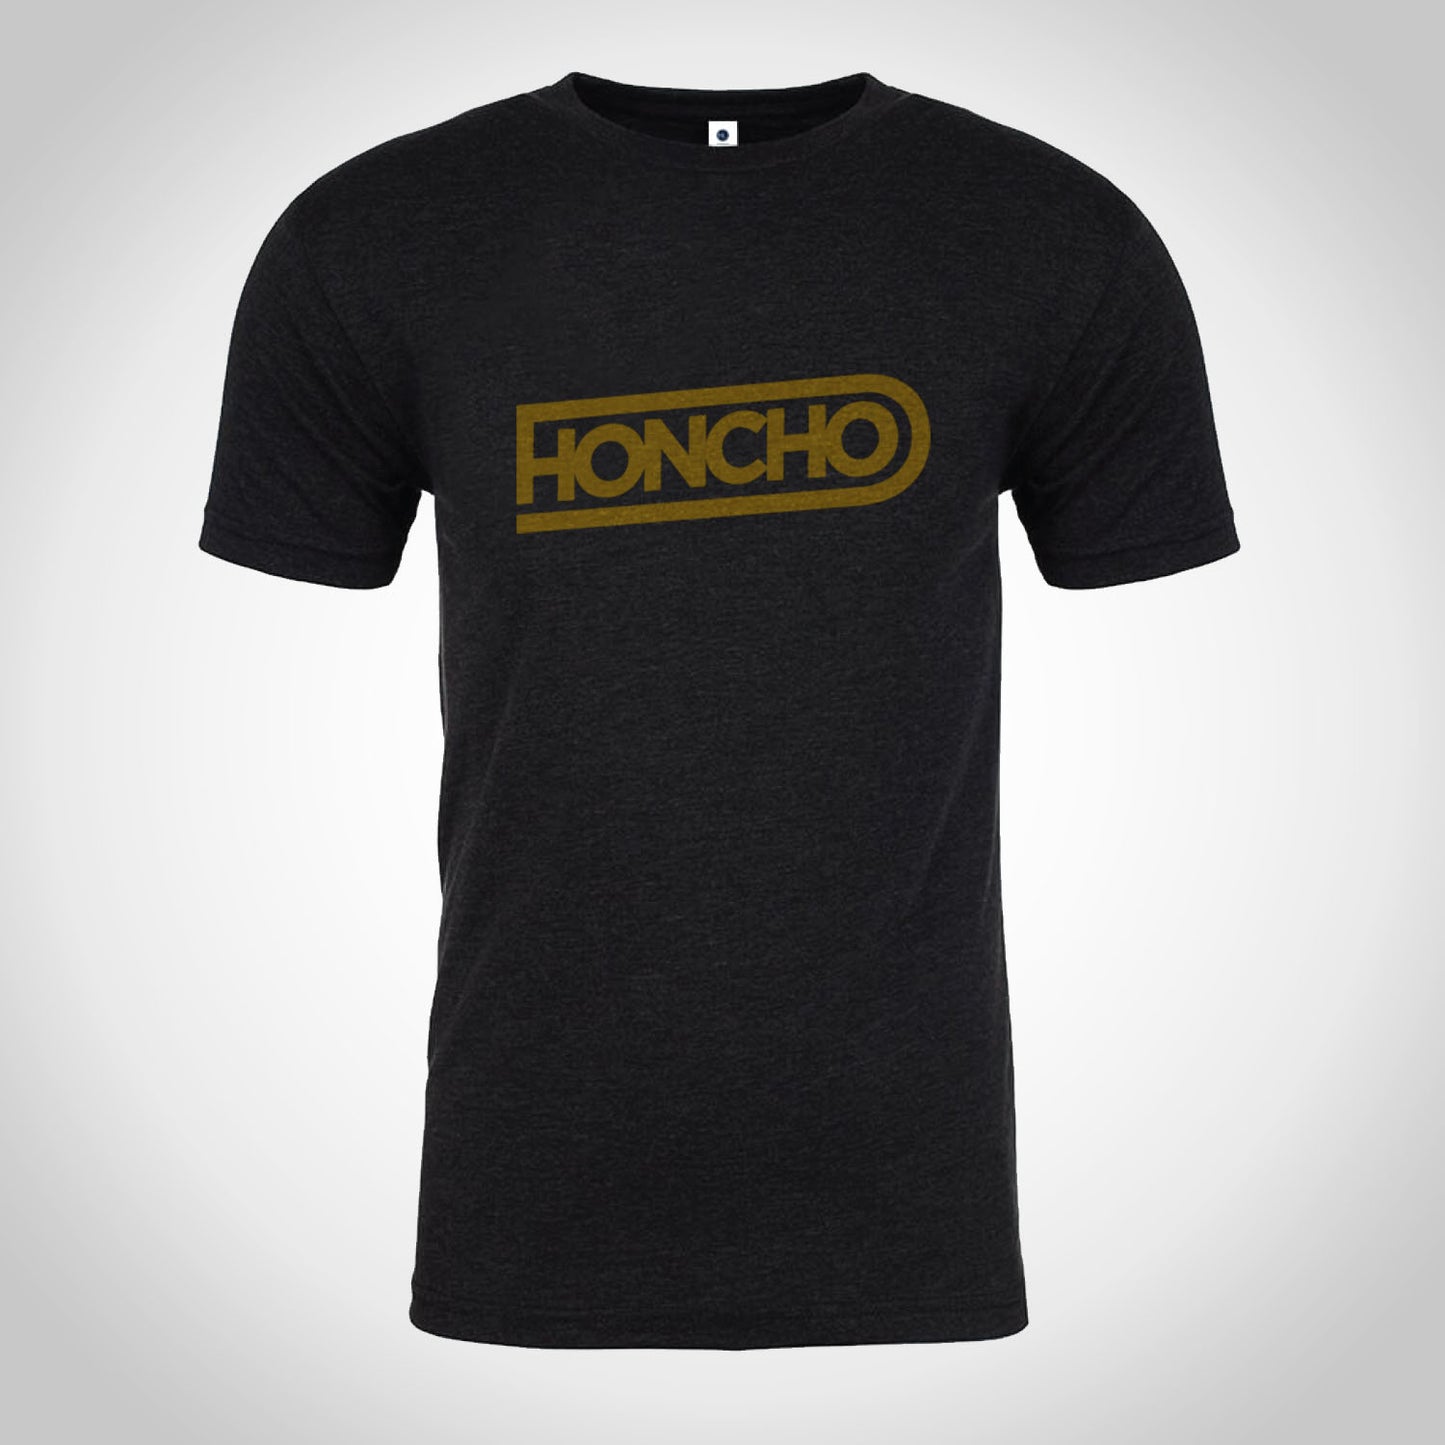 Honcho 'Athletic' Crew